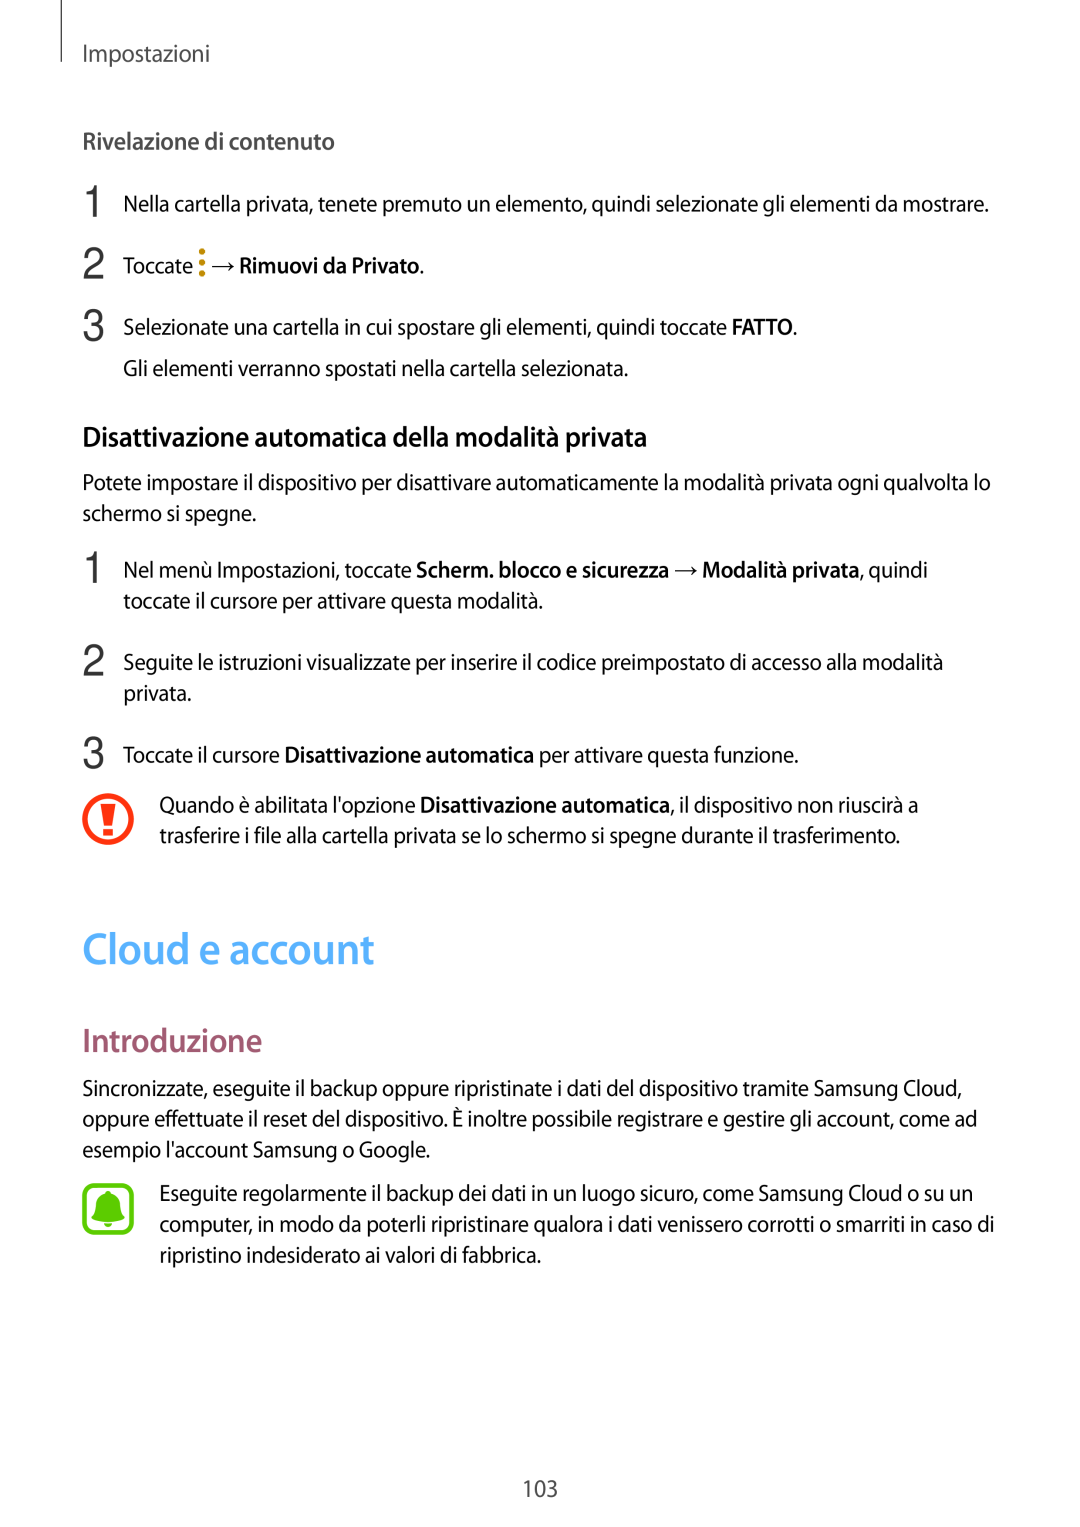 Samsung SM-T810NZDEPHN manual Cloud e account, Disattivazione automatica della modalità privata, Rivelazione di contenuto 